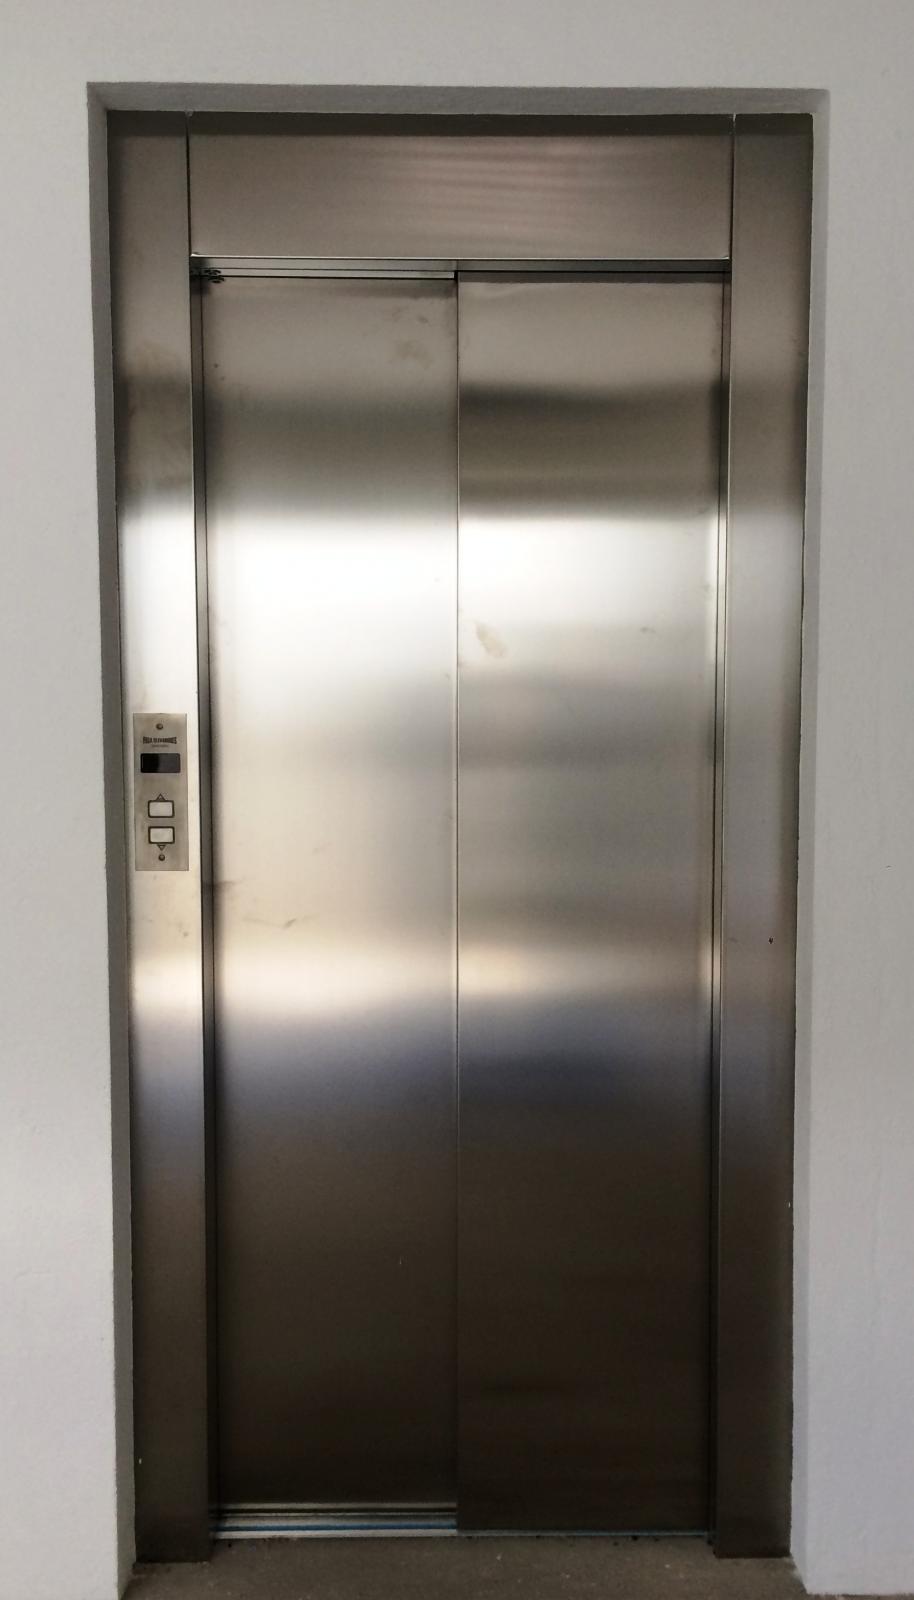 Fabricante de elevadores em SP